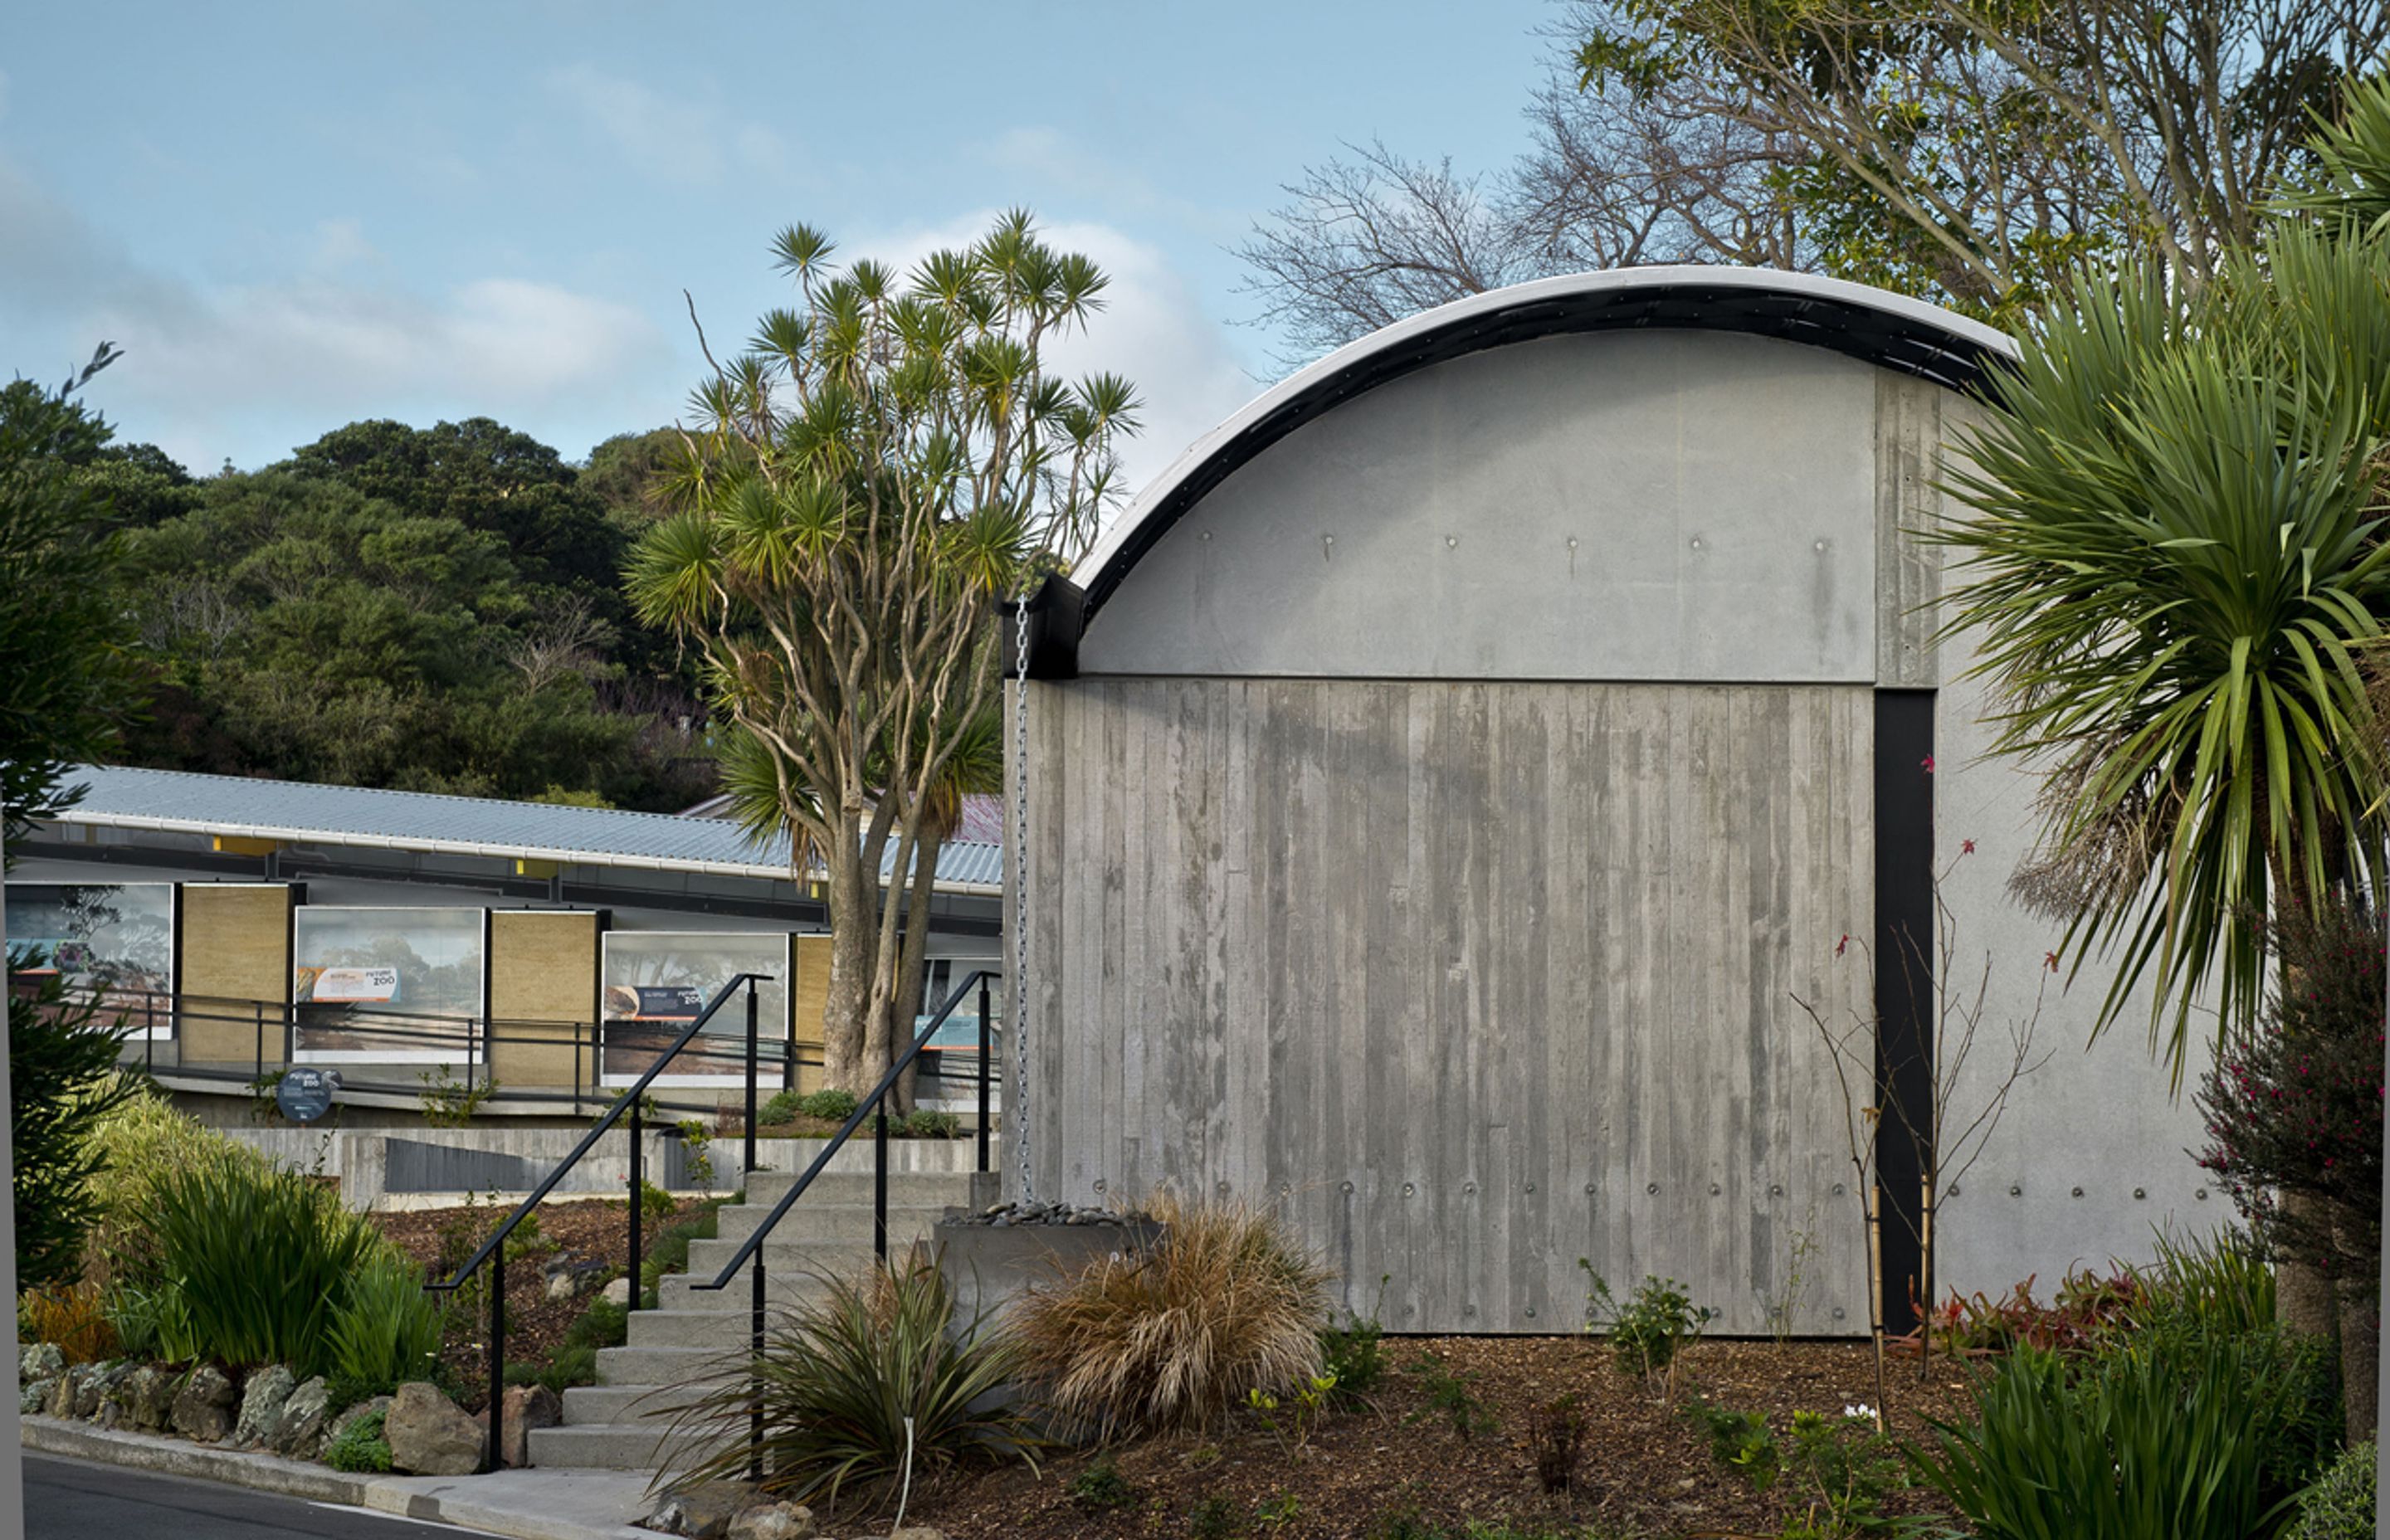 The Wellington Zoo Hub